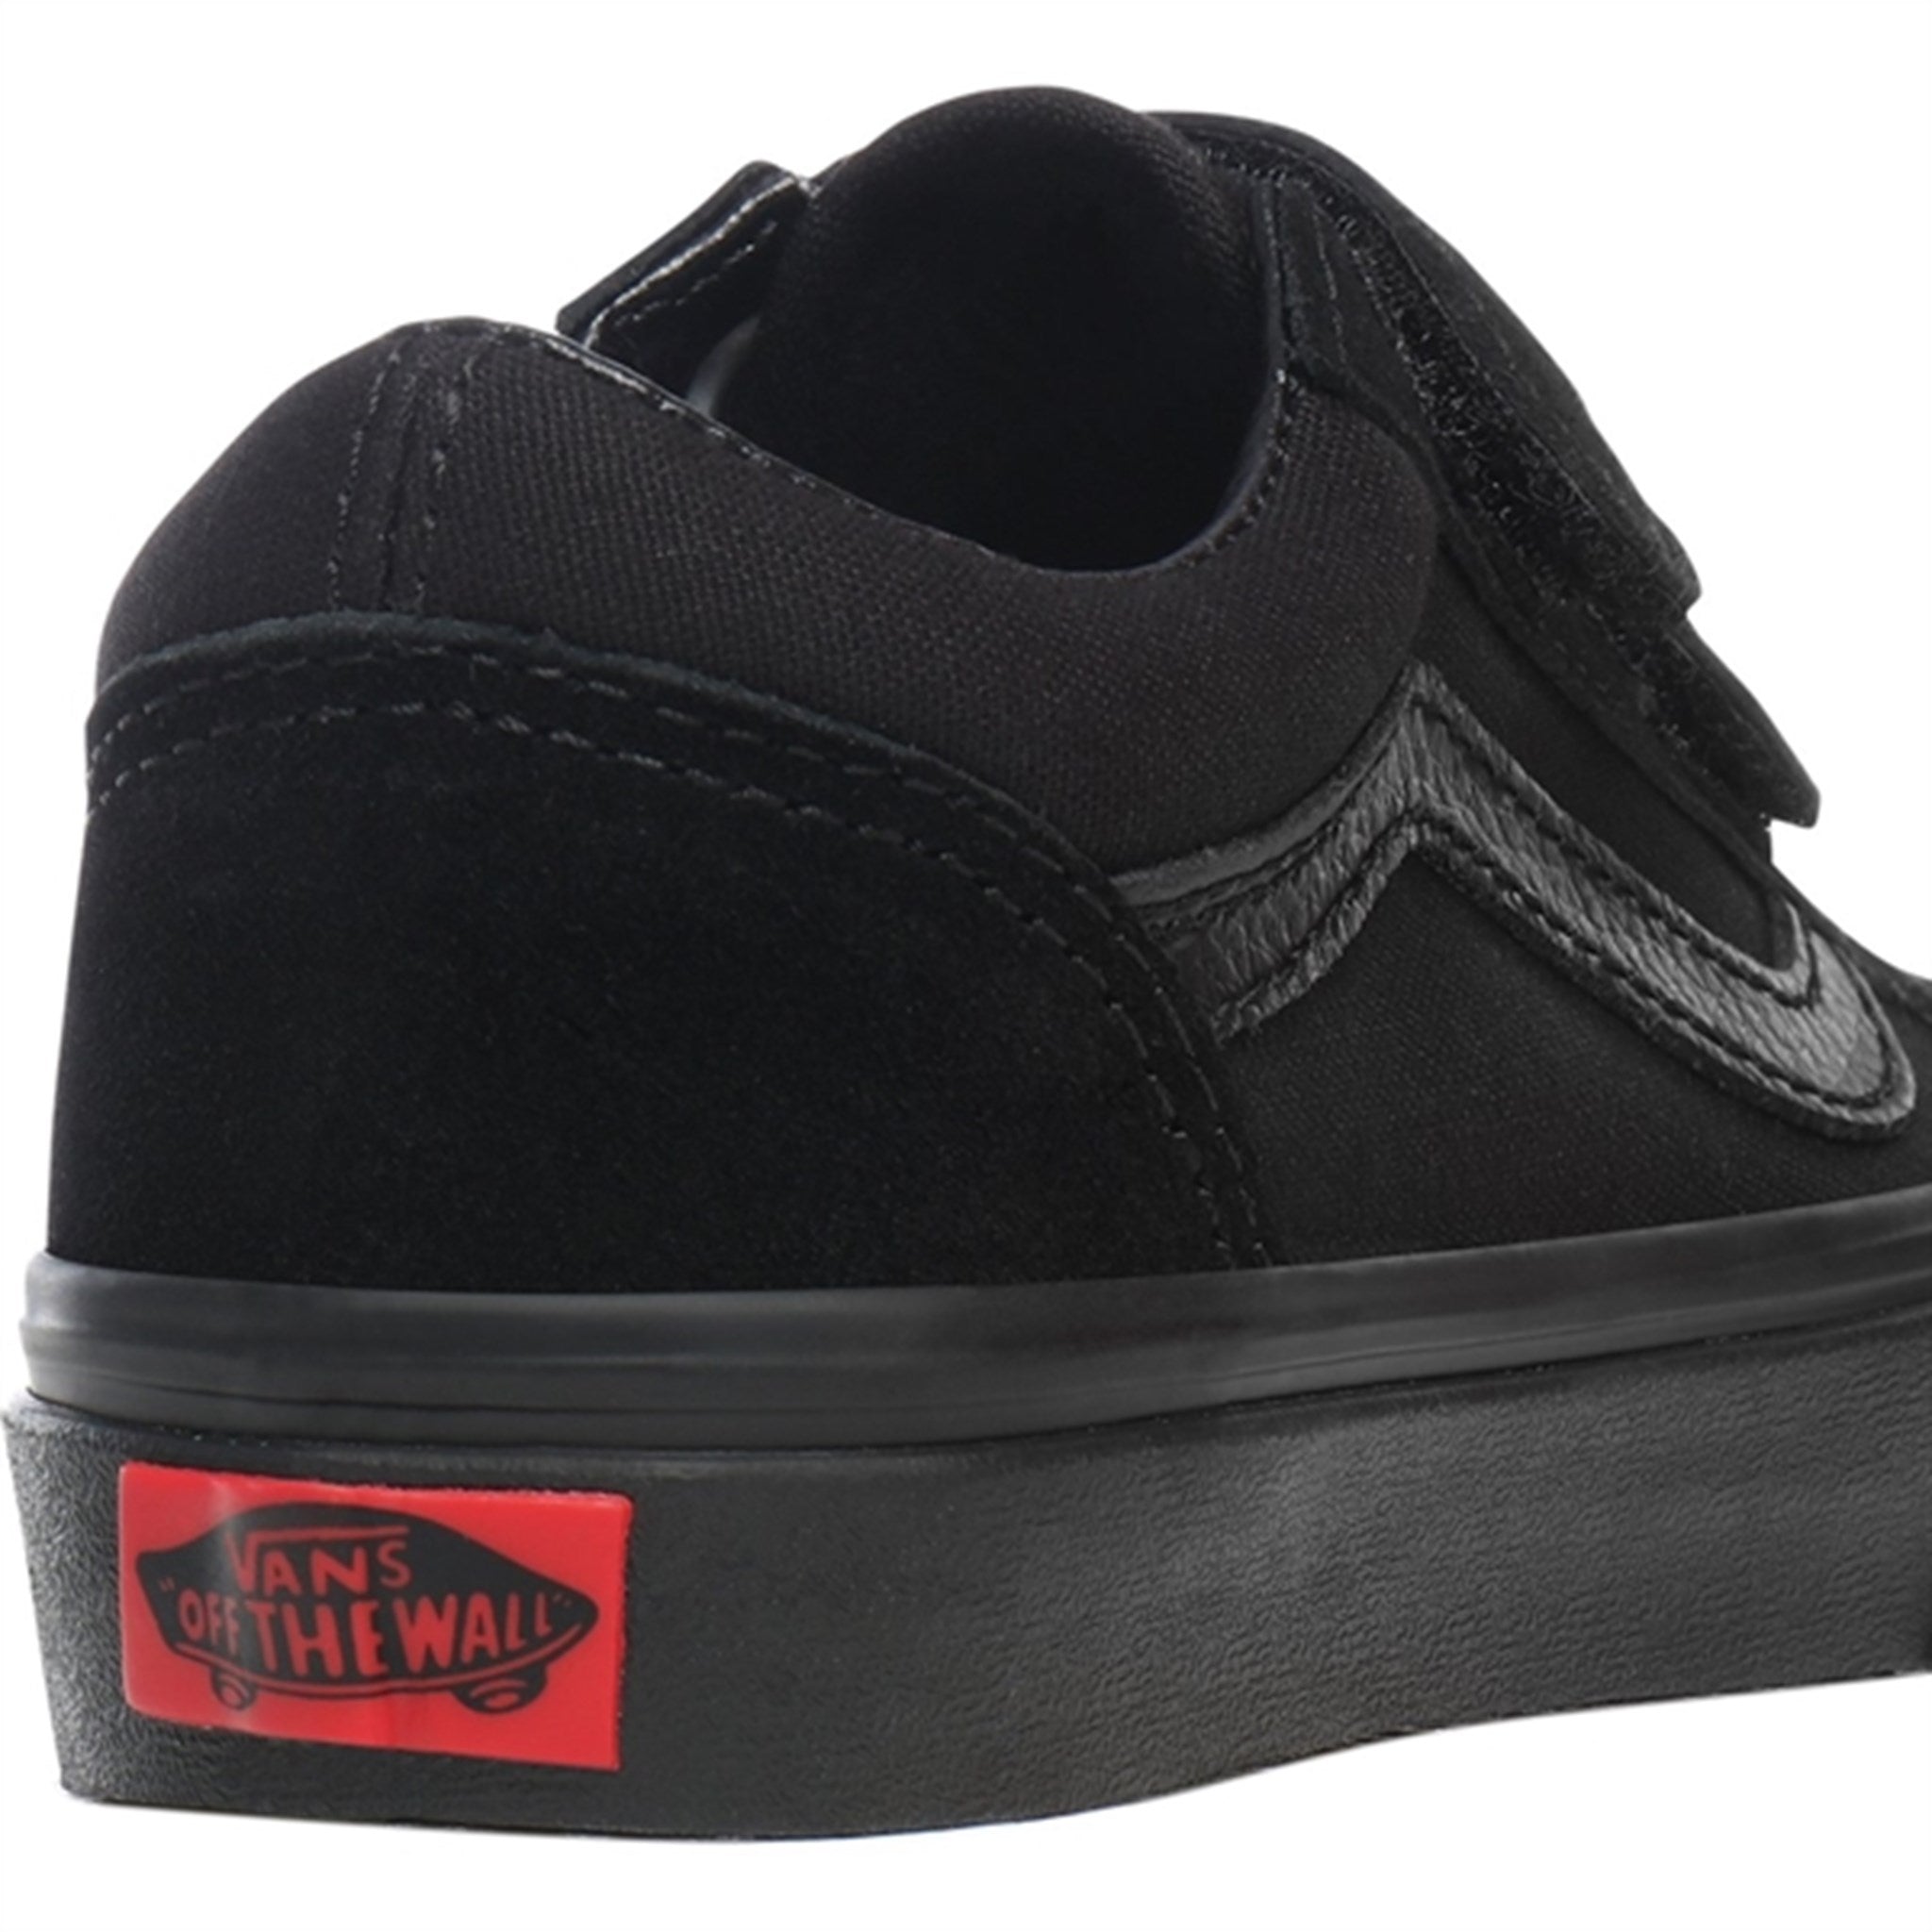 VANS Uy Old Skool V Black/Black Sneakers 7